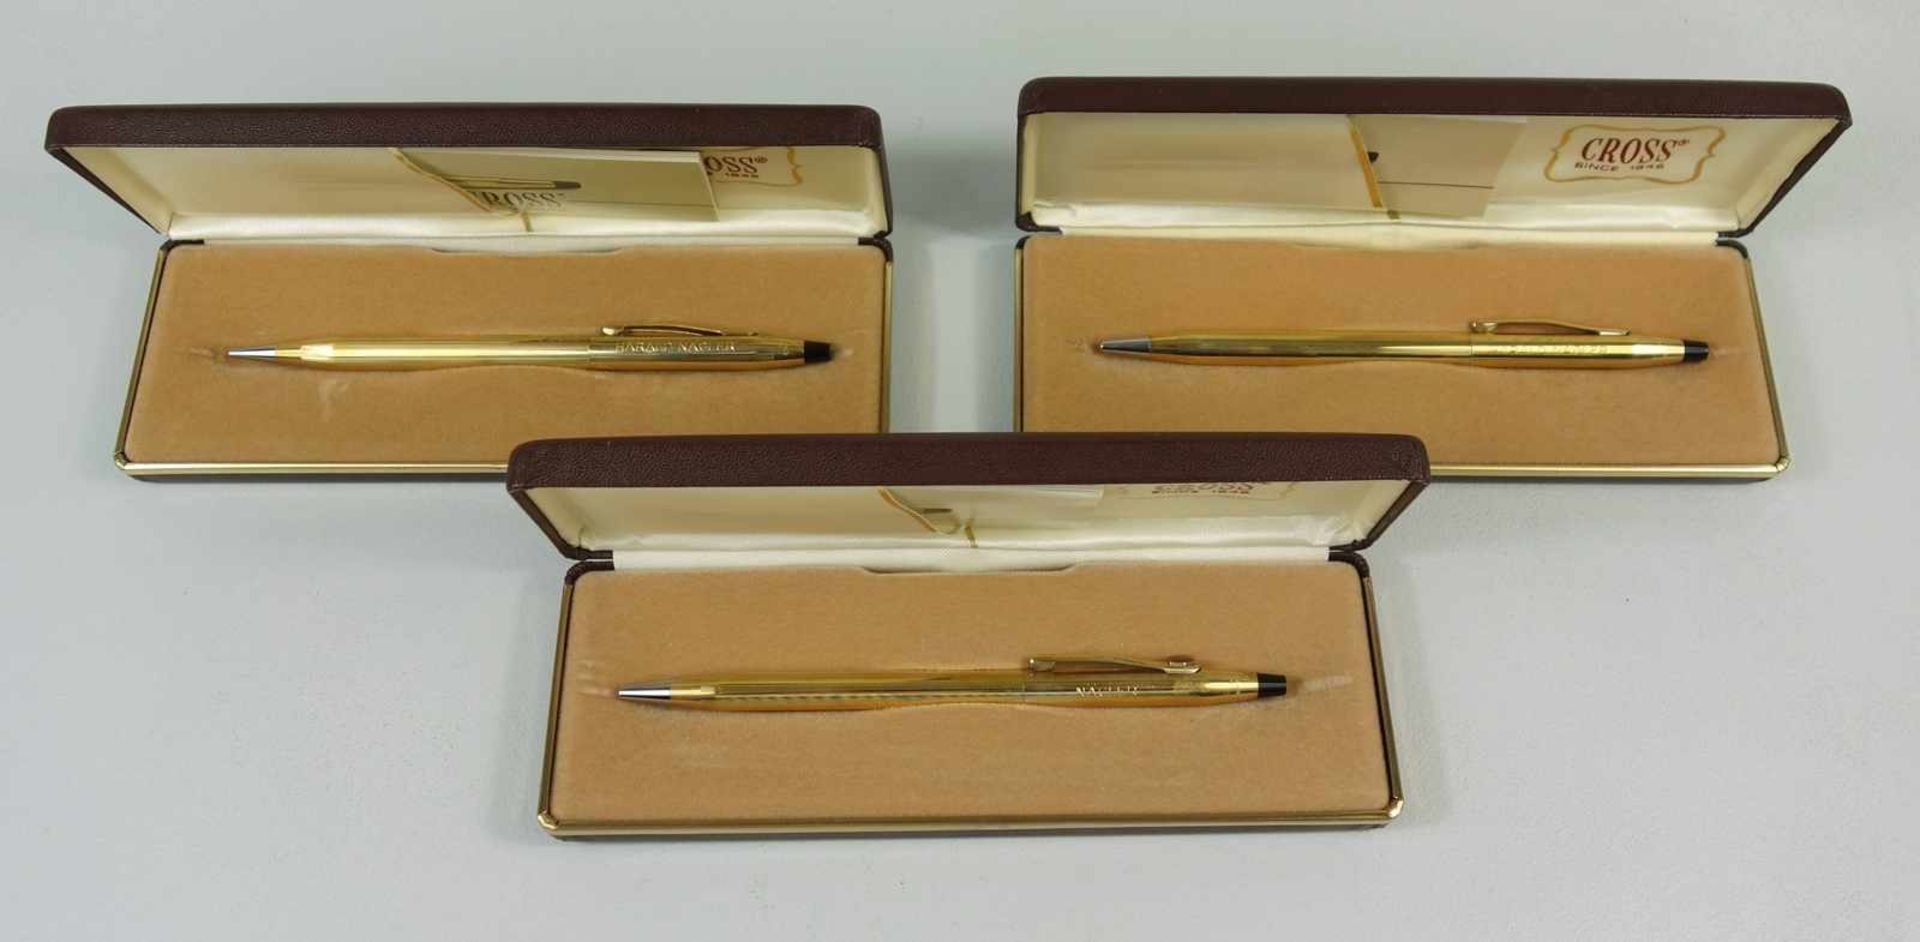 3 Drehkugelschreiber der Marke "Cross", in Etui, vergoldet mit Widmungsgravur, L.13,3cm- - -18.